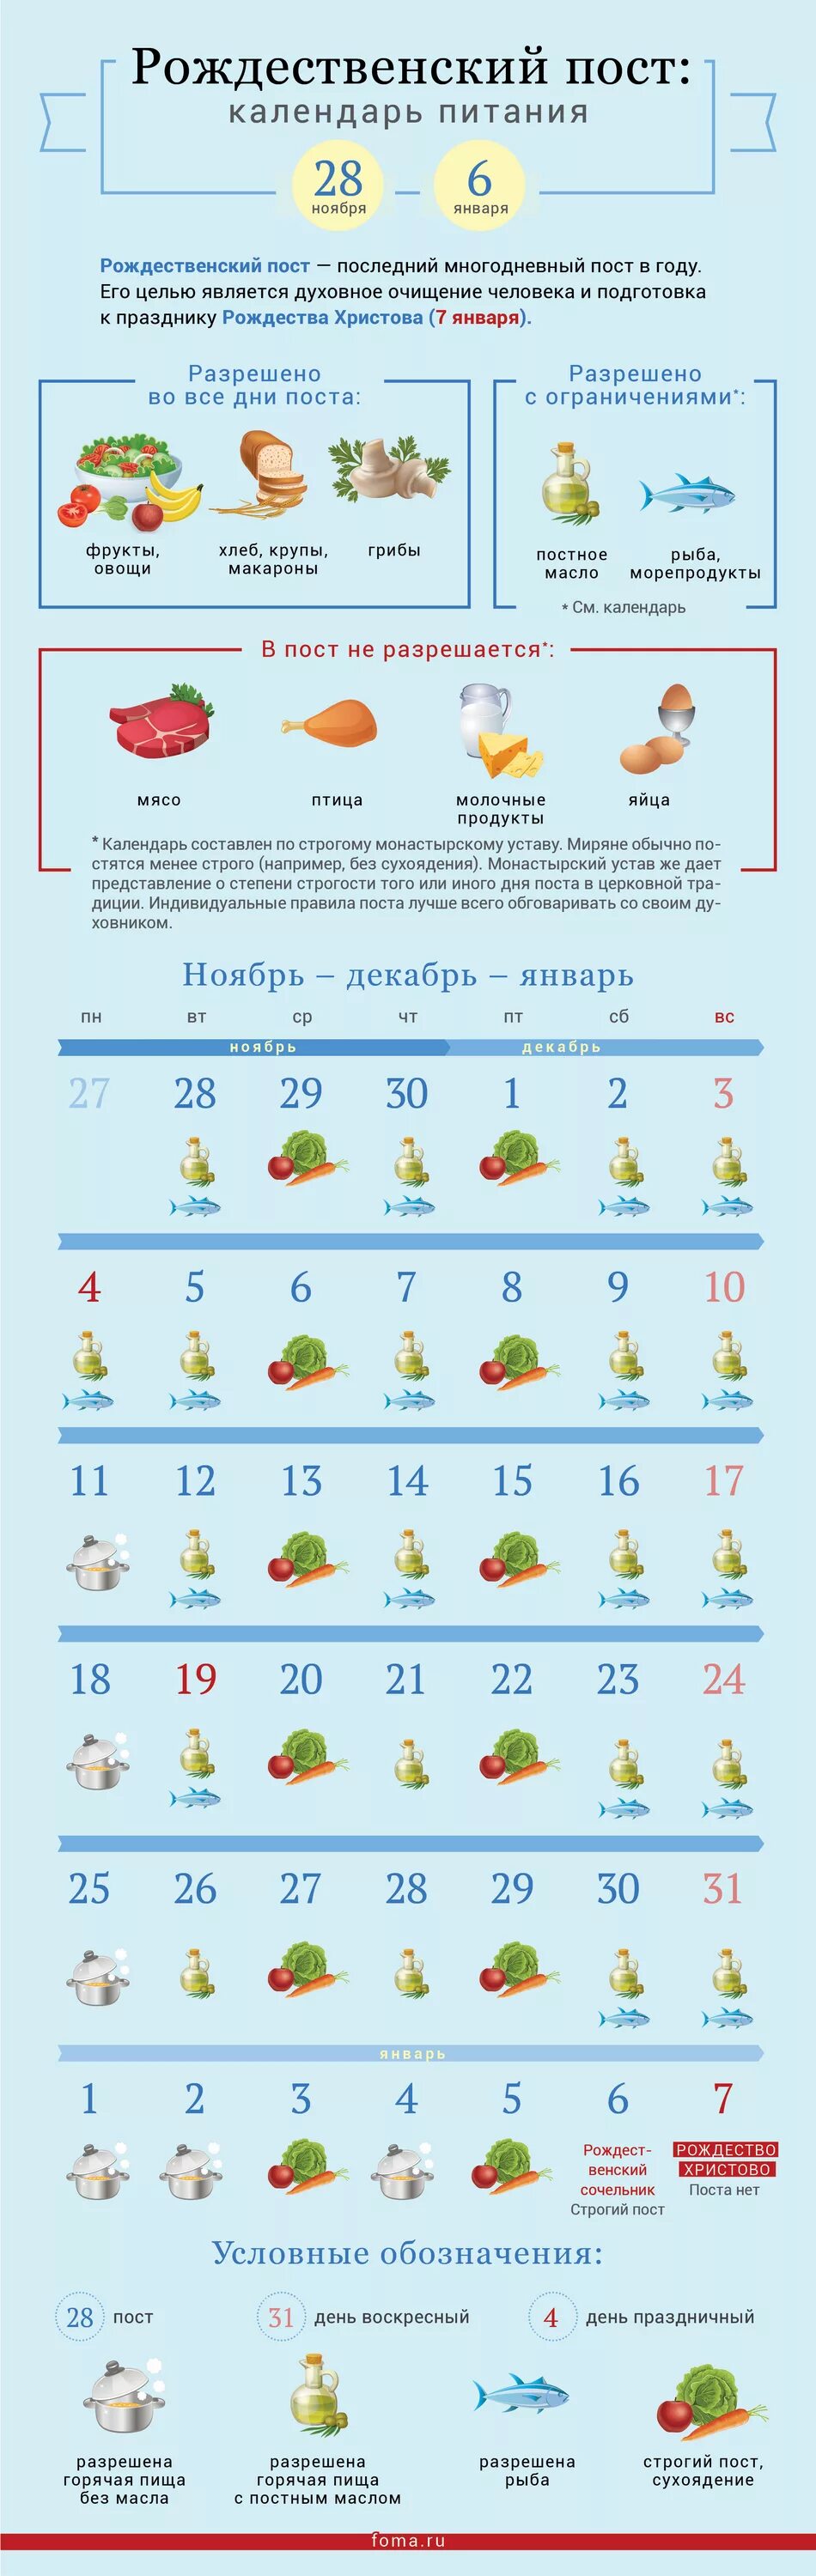 В субботу можно рыбу. Рождественский пост 2022 календарь питания по дням. Календарь питания Рождественского поста на 2022 год. Рождественский пост 2021-2022 календарь питания. Рождественский пост 2022-2023 питание по дням.